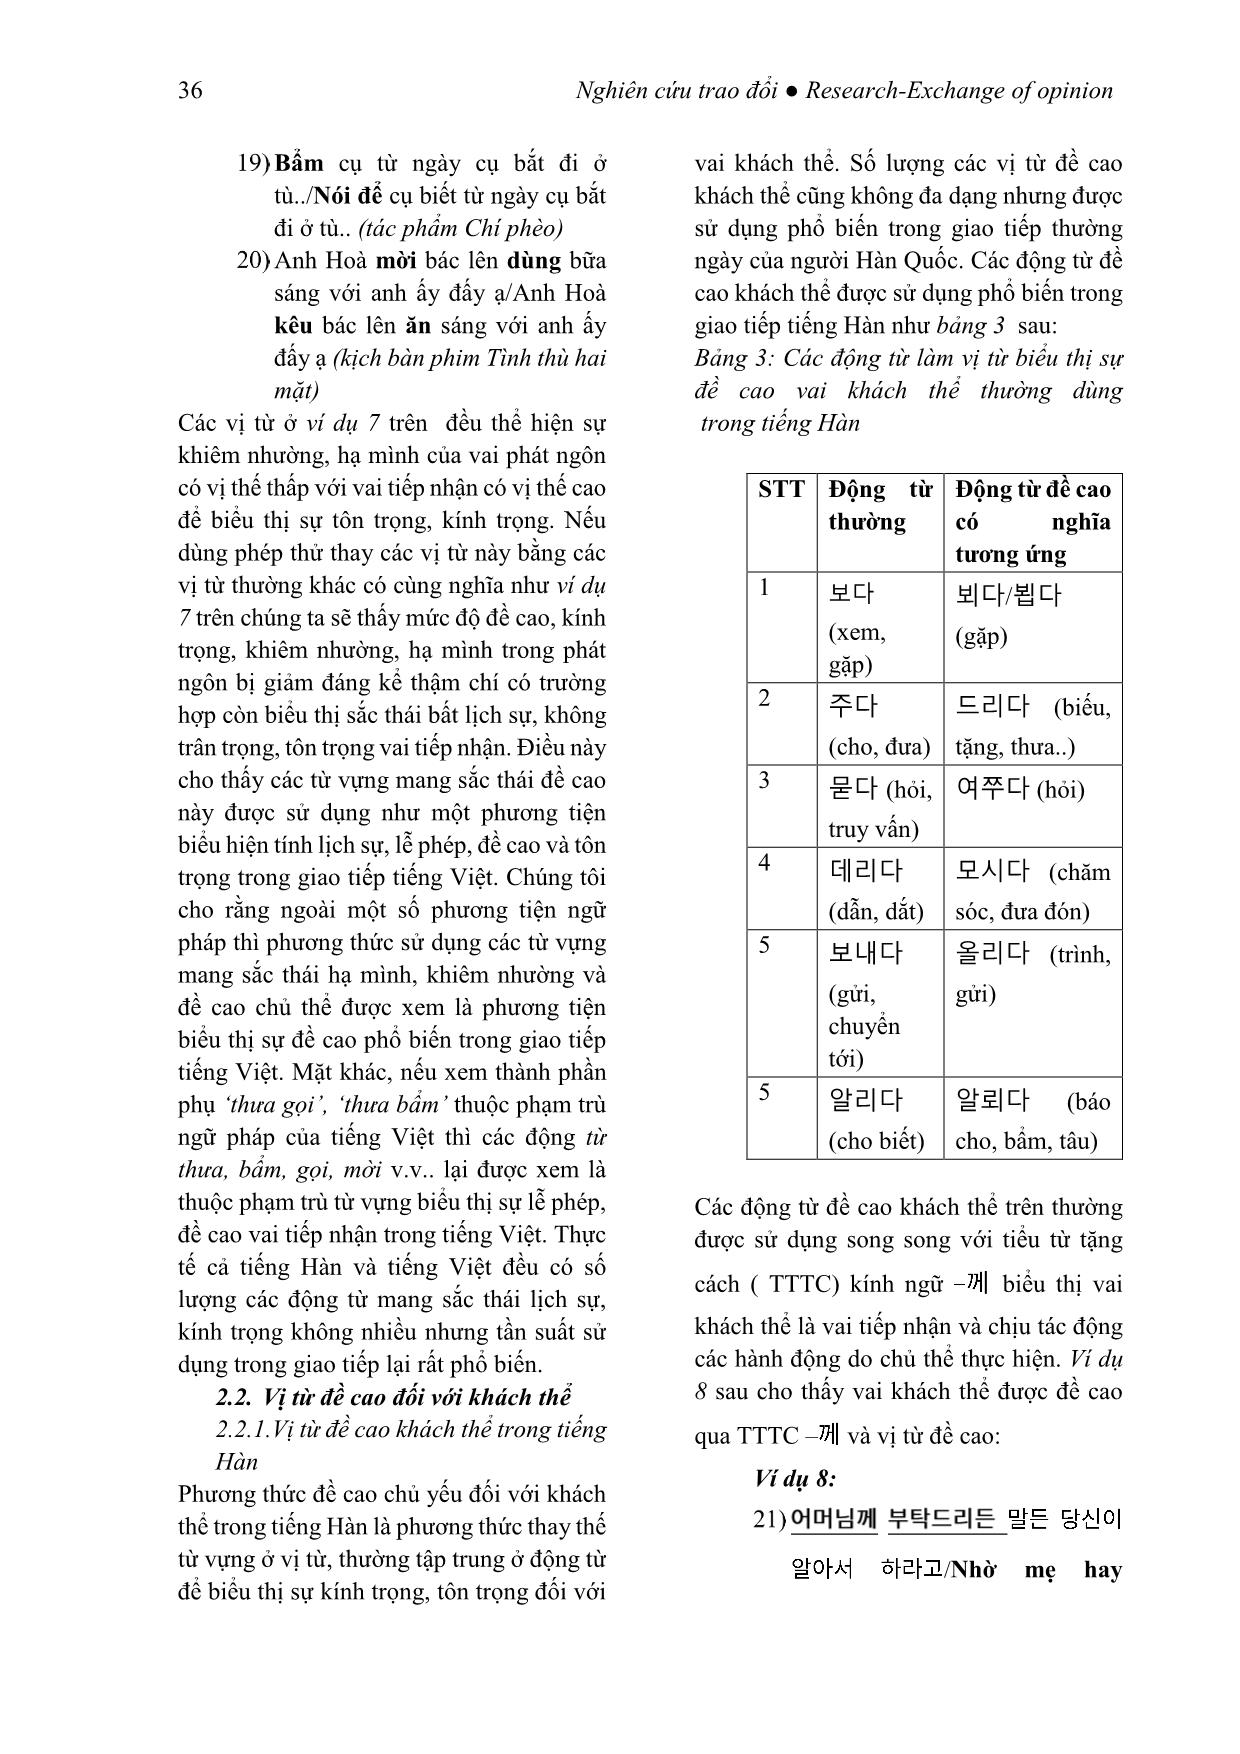 Kính ngữ tiếng Hàn qua phương thức thay thế từ vựng (Xét trong mối tương quan với tiếng Việt) trang 10